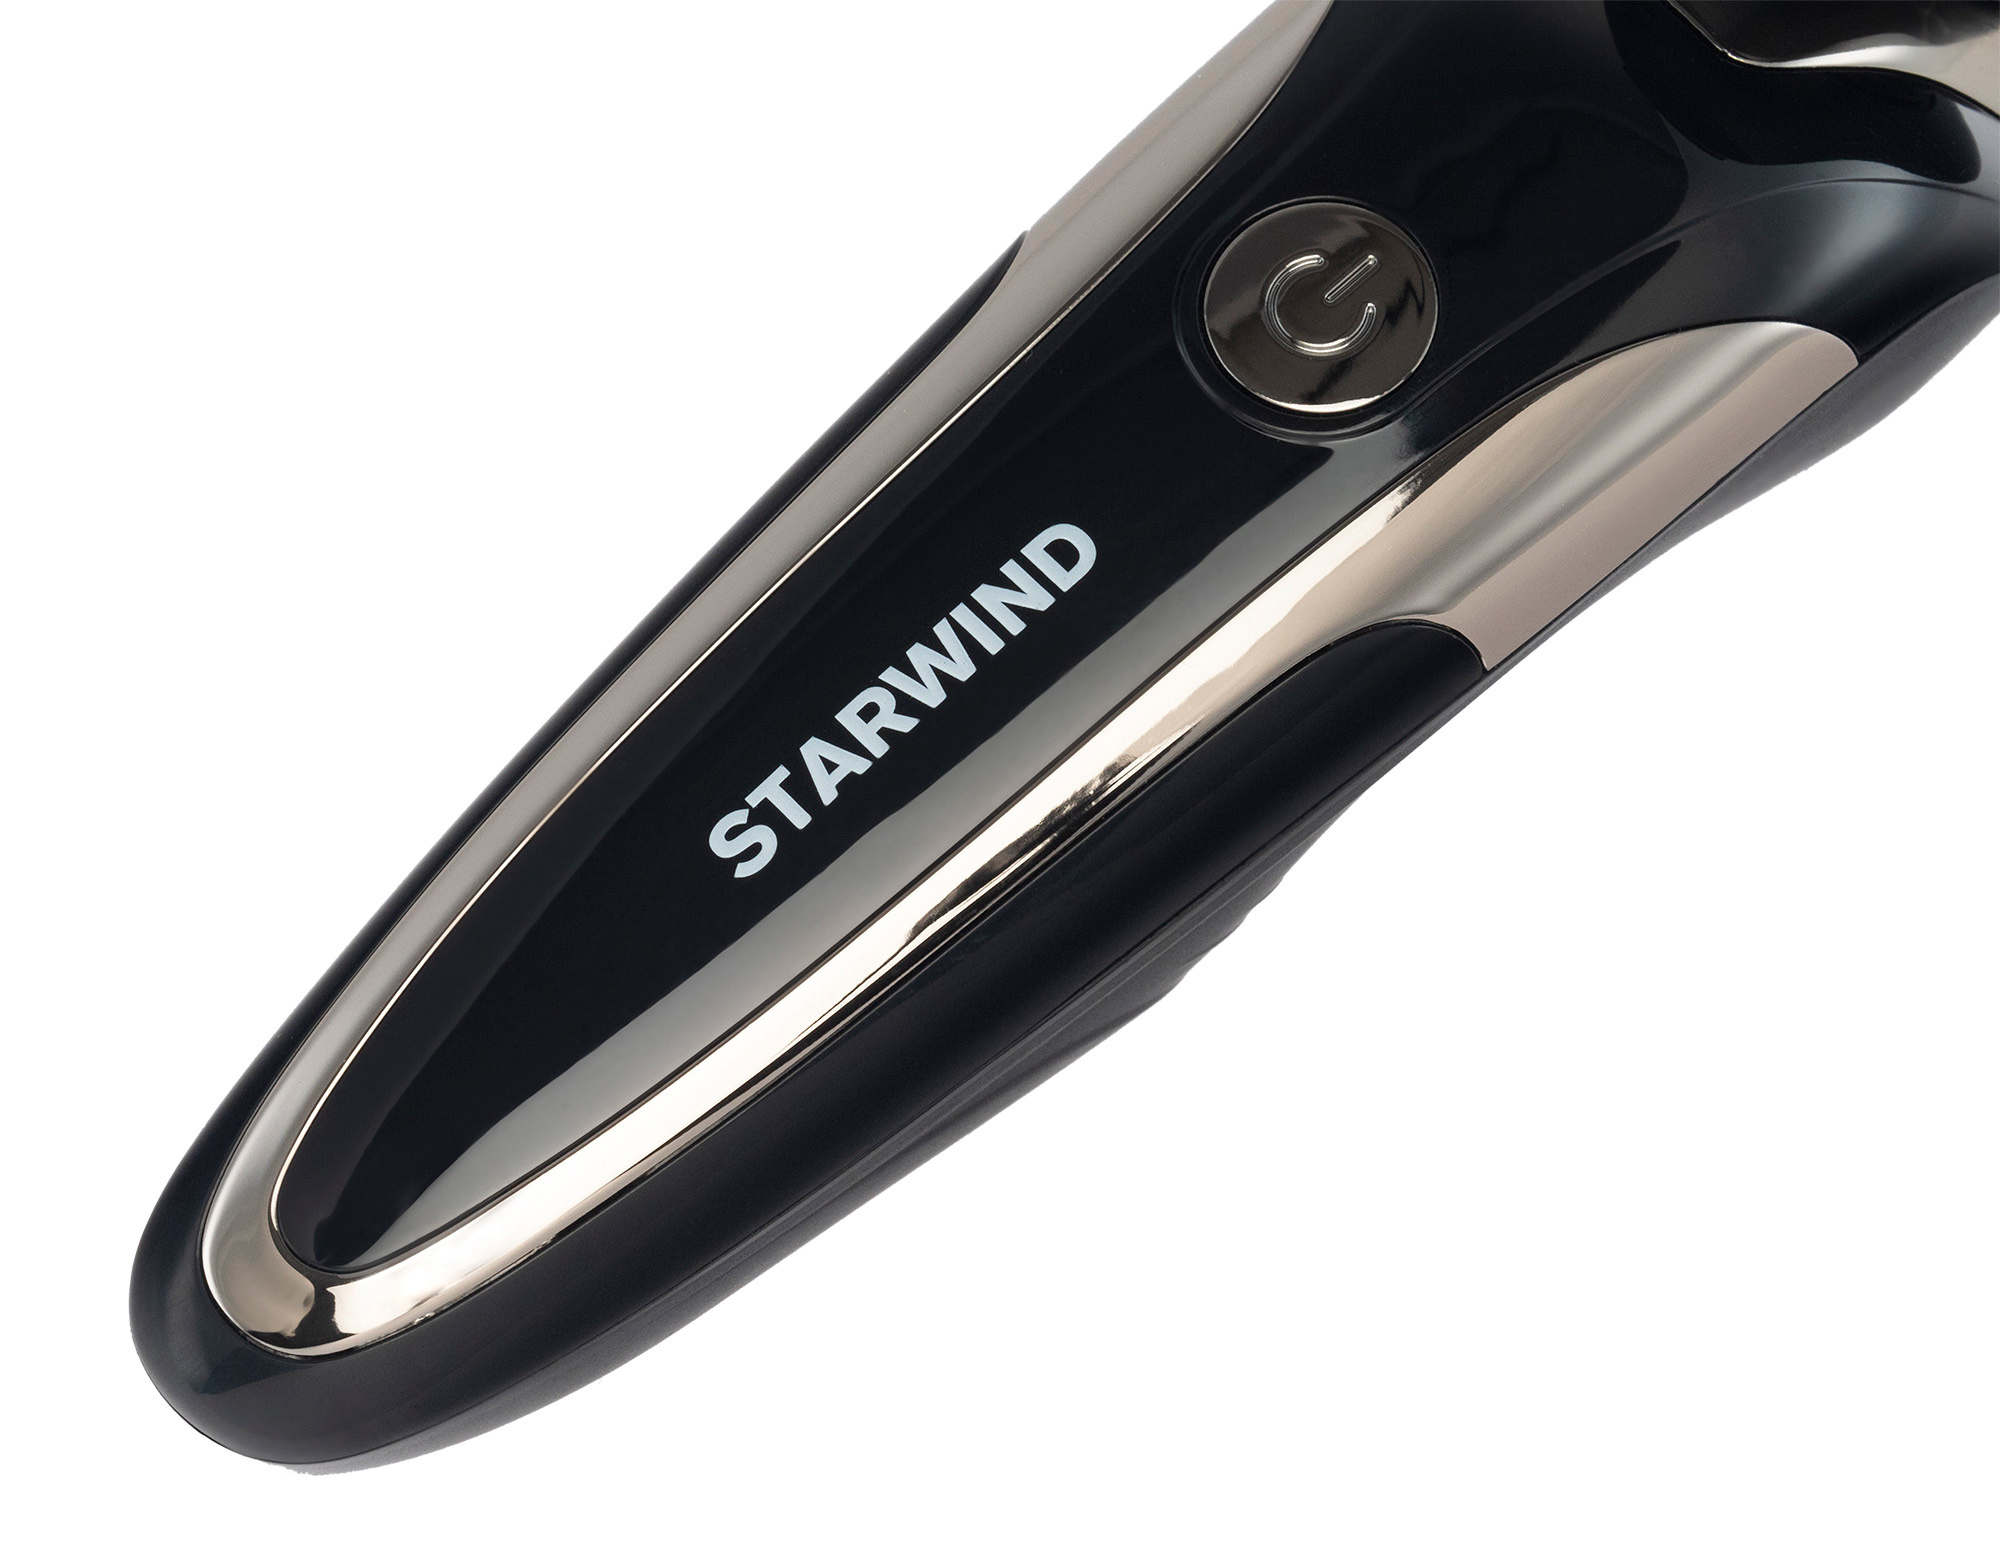 Электробритва Starwind SSH 4040 черный от магазина Старвинд